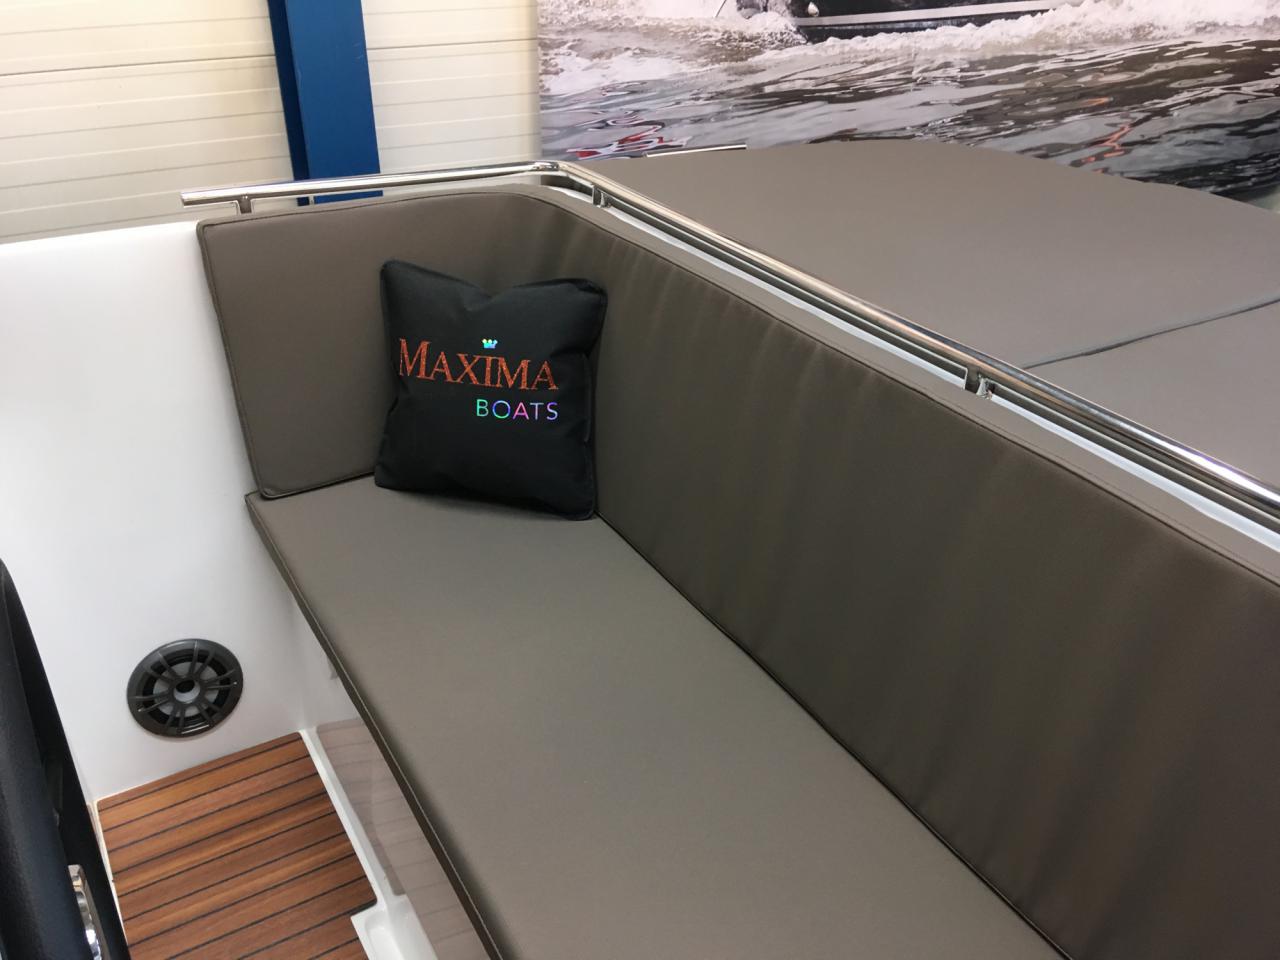 The Maxima 620 Retro - Base Boat Build from